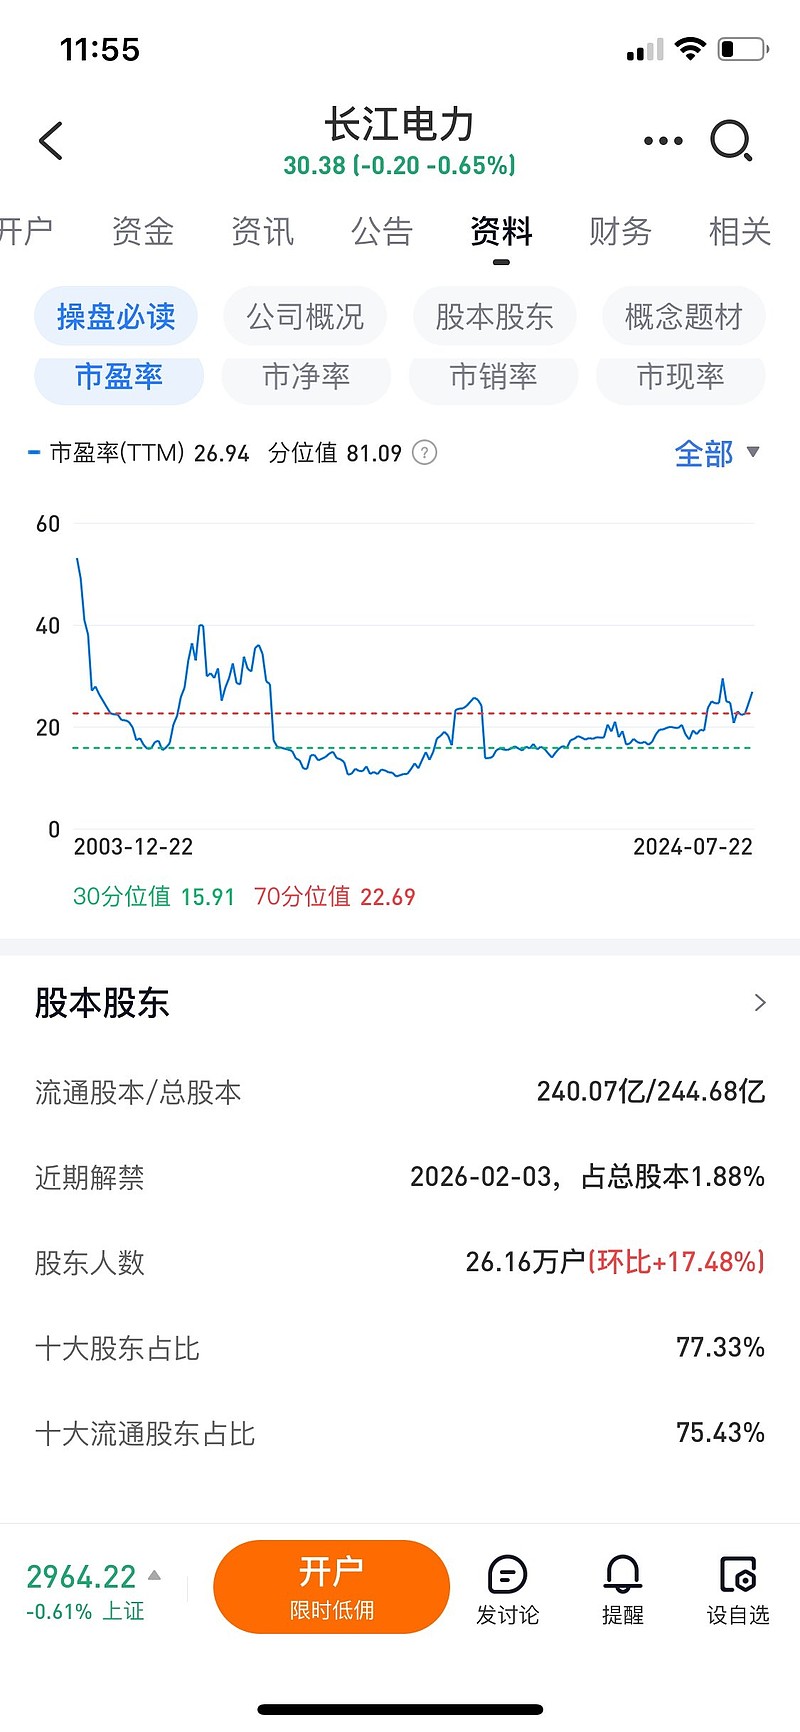 长江电力 来到历史市盈率80分